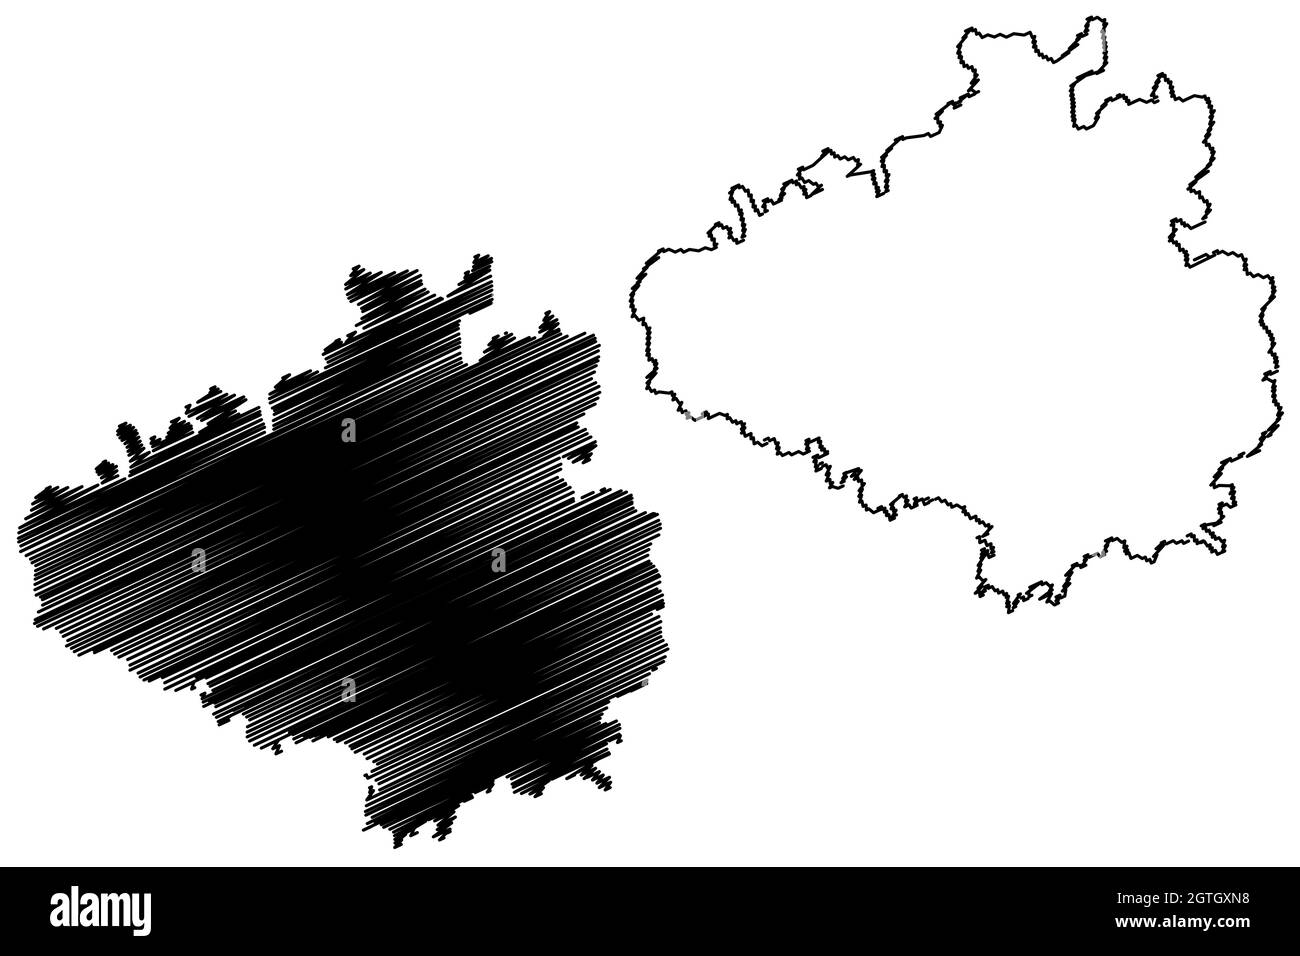 Distretto di Chikkaballapura (Stato di Karnataka, Repubblica dell'India, divisione di Bangalore) illustrazione vettoriale della mappa, schizzo della mappa di Chikkaballapura Illustrazione Vettoriale